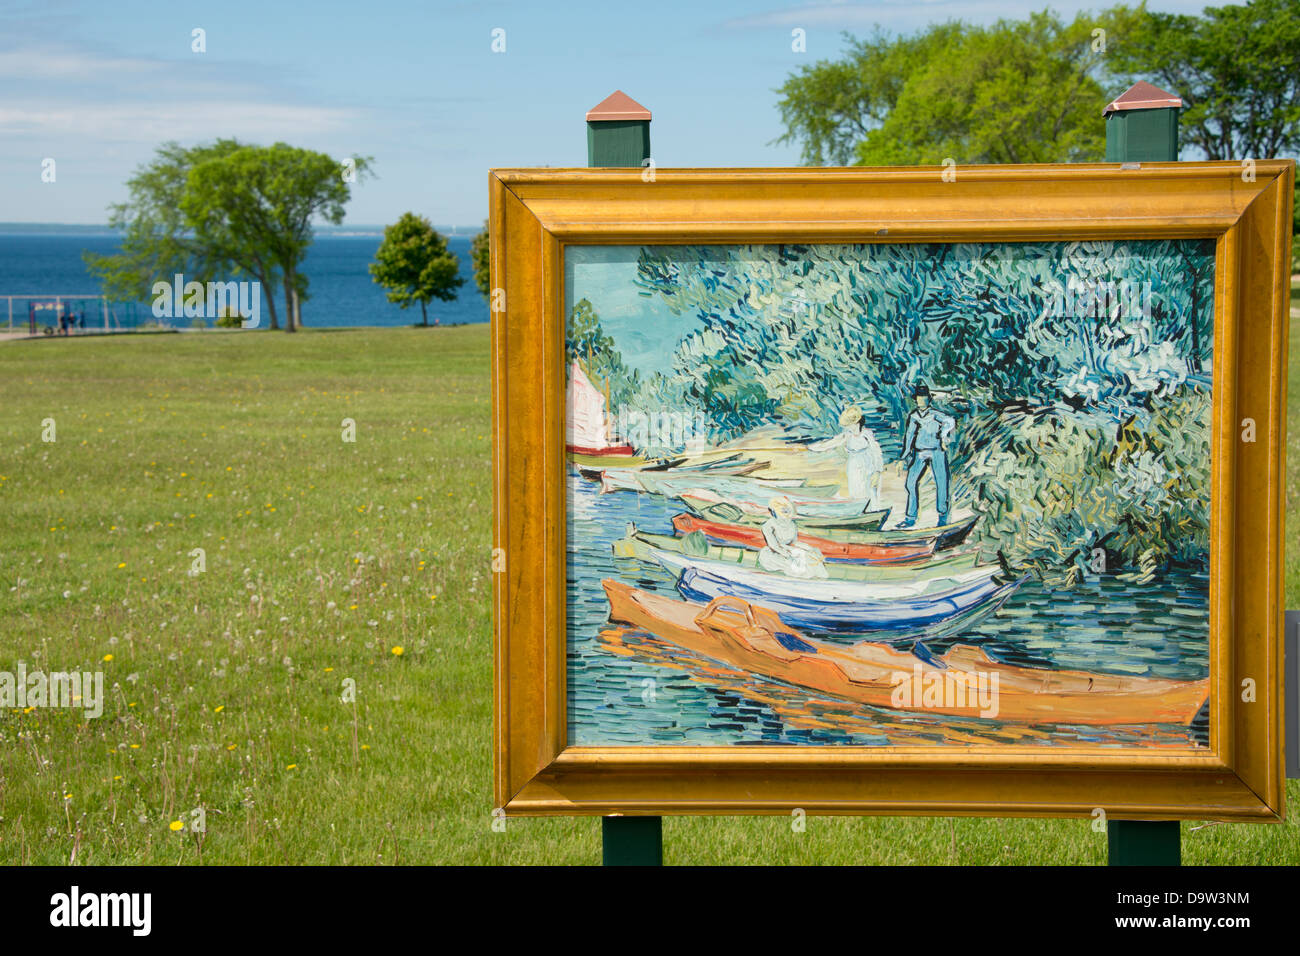 Le Michigan, l'île Mackinac. L'art dans le parc, la reproduction de "Rives de l'Oise à Auvers" (1890) par Van Gogh. Banque D'Images